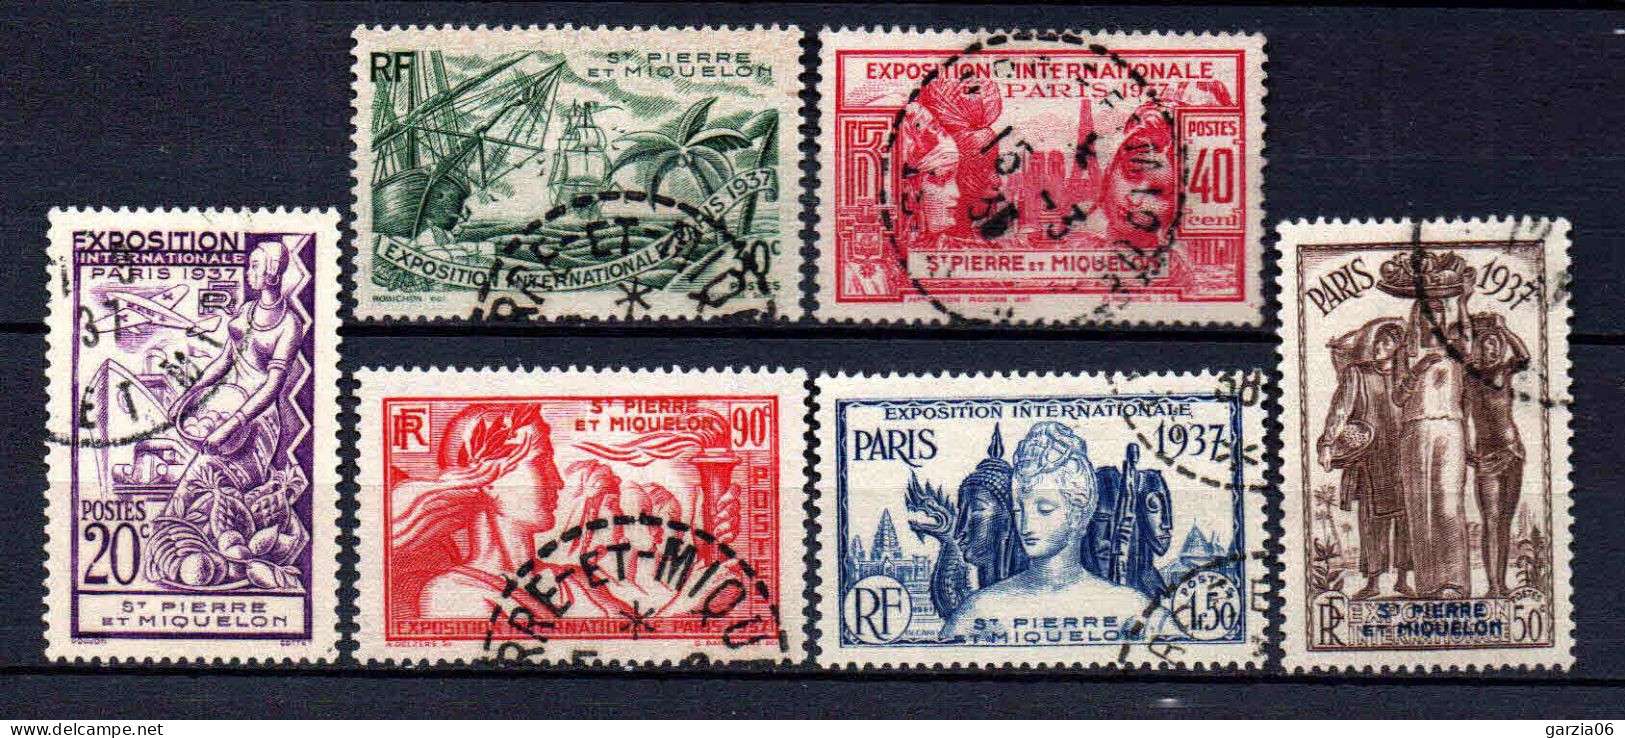 St Pierre Et Miquelon - 1937 - Exposition Internationale De Paris - N° 160 à 165 - Oblit - Used - Usados